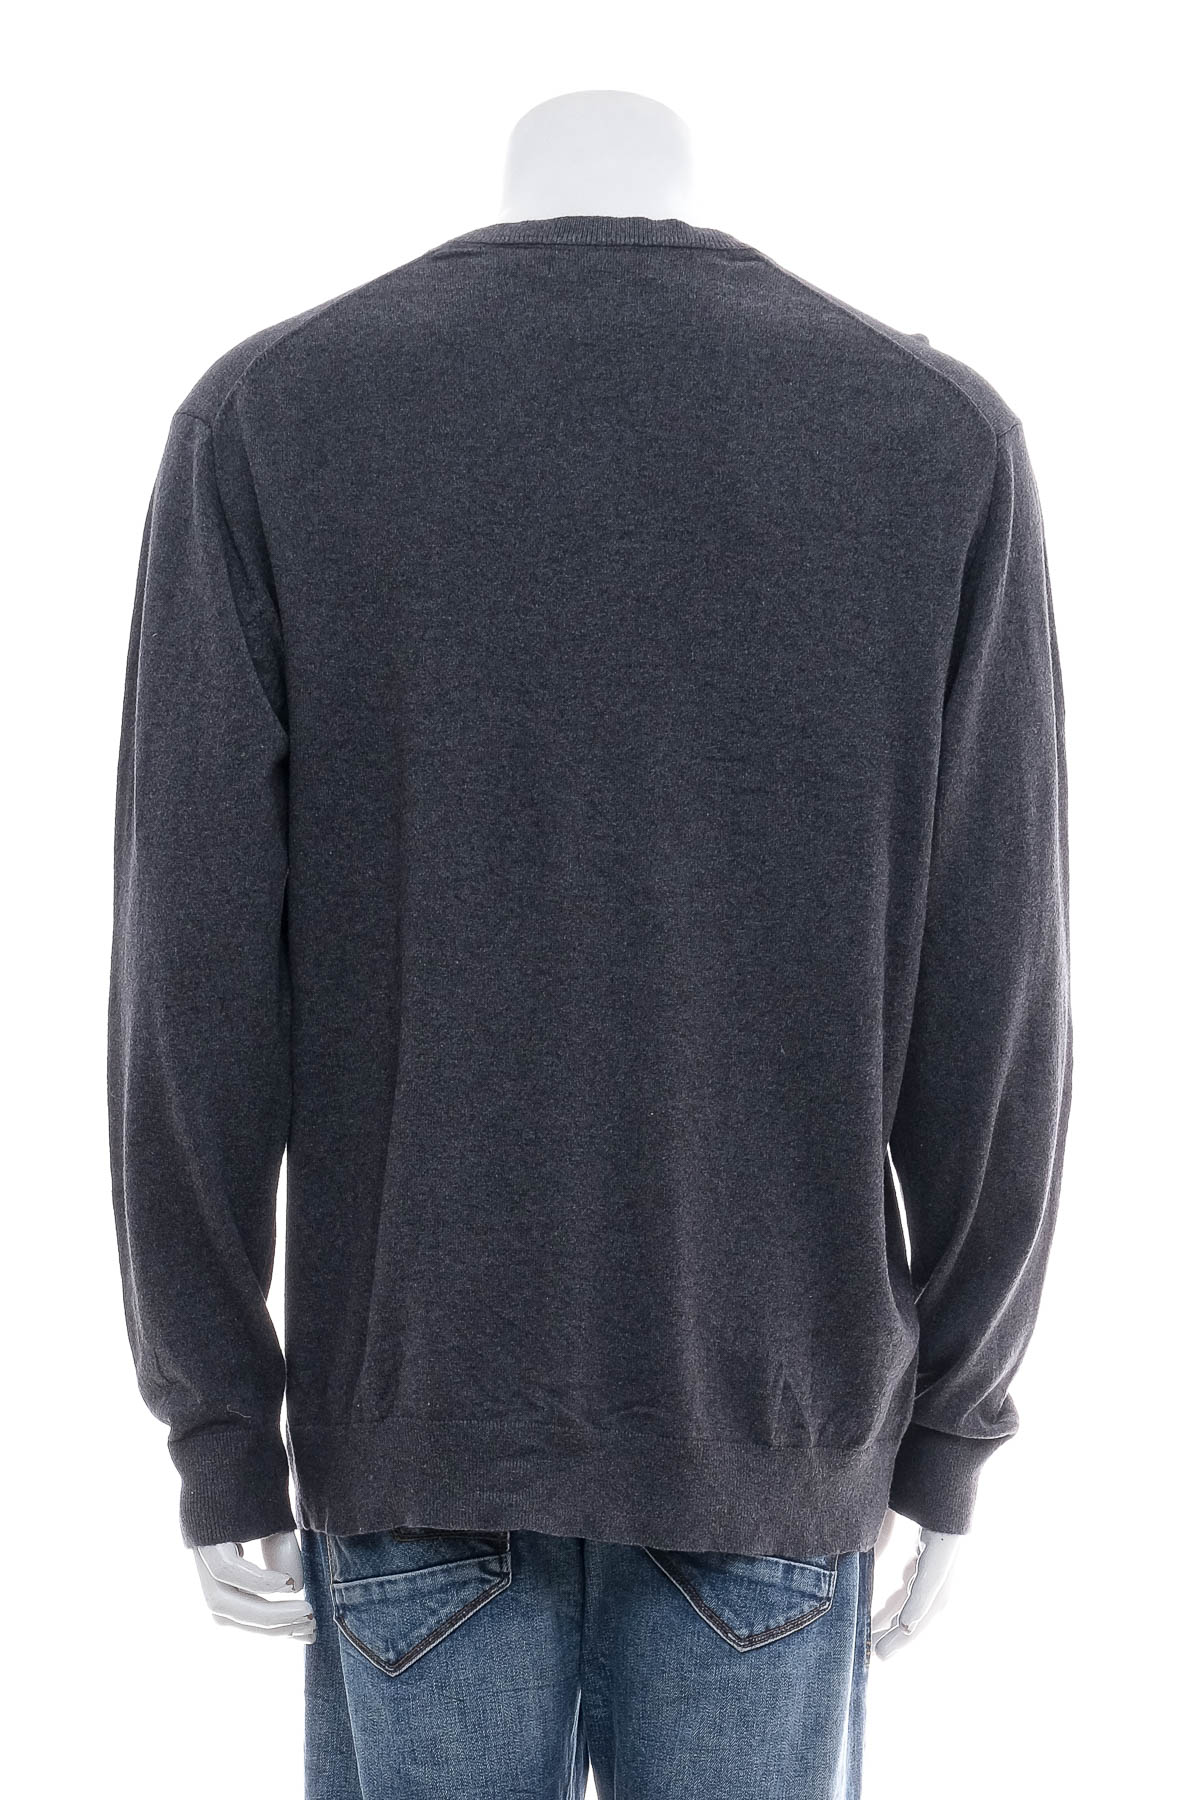 Men's sweater - claiborne - 1